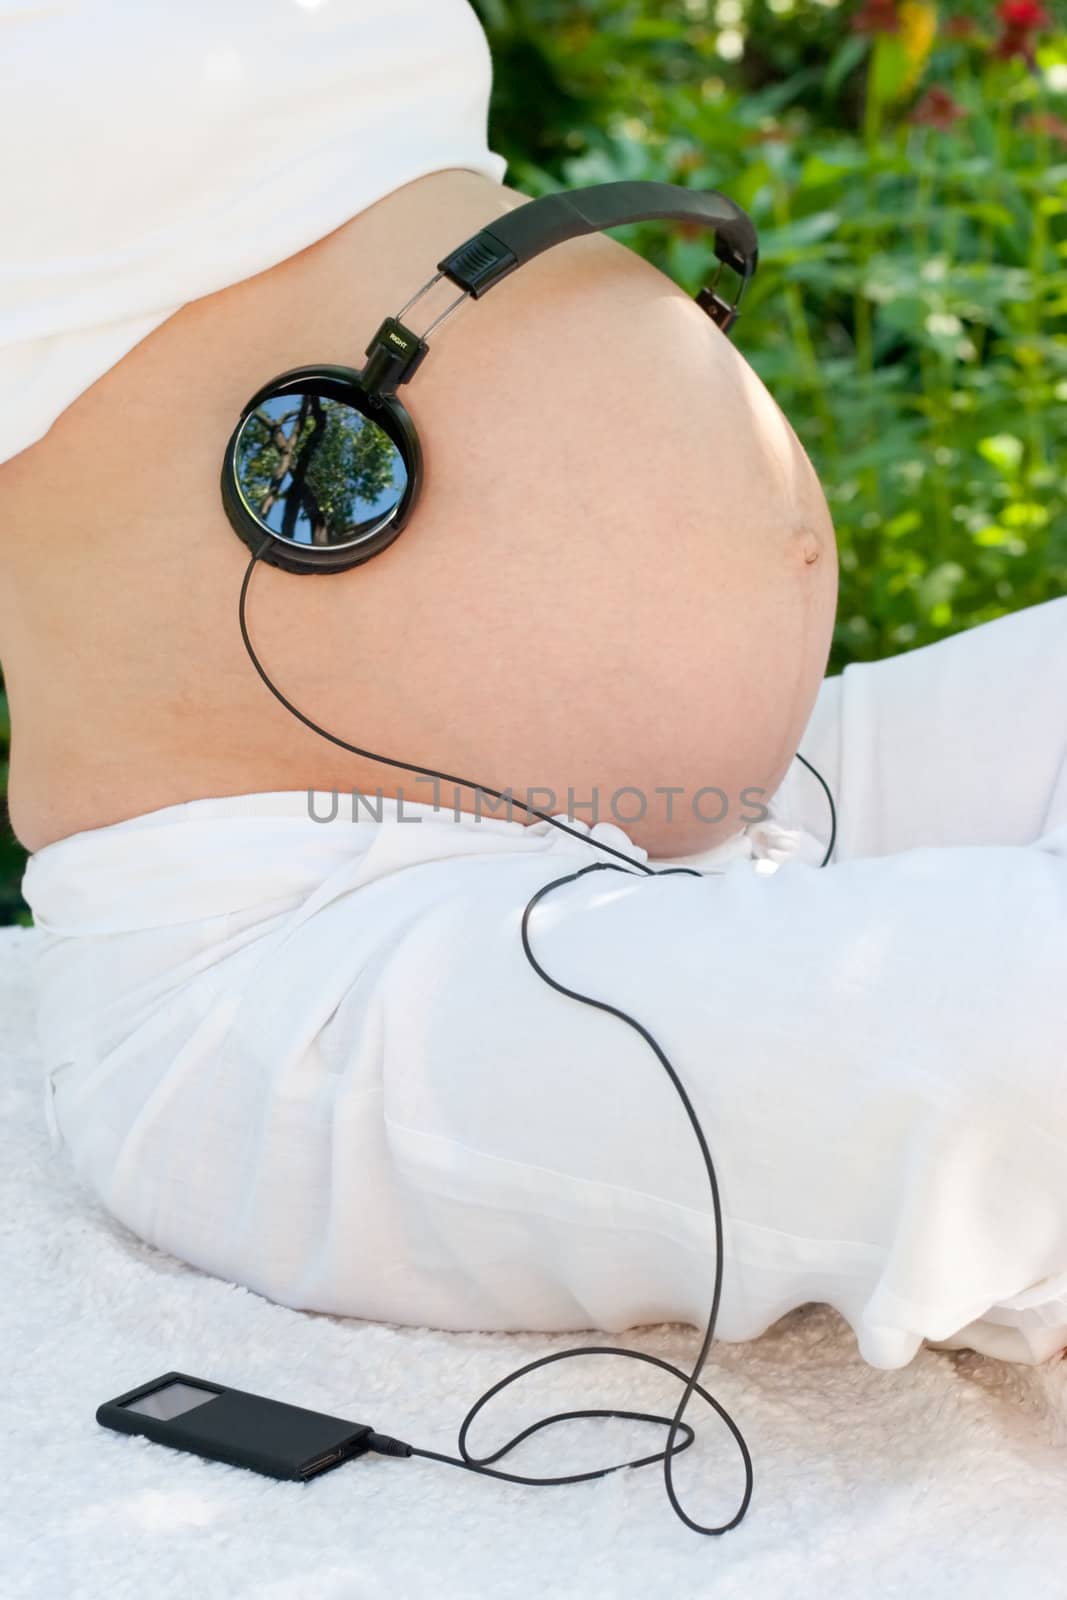 Headphones on belly by naumoid